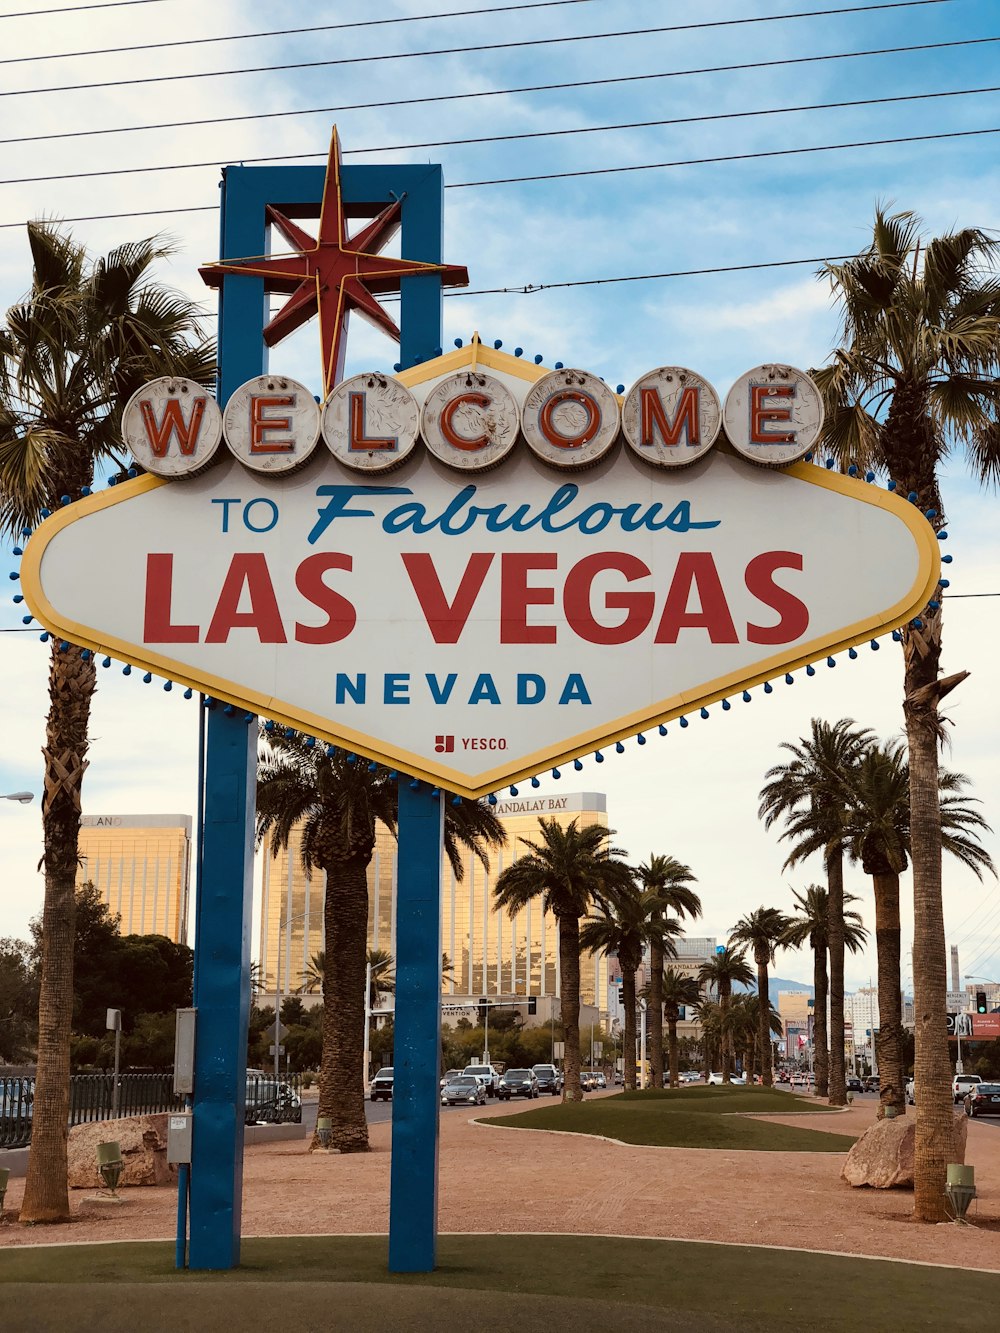 Bienvenido a la fabulosa señalización de Las Vegas, Nevada